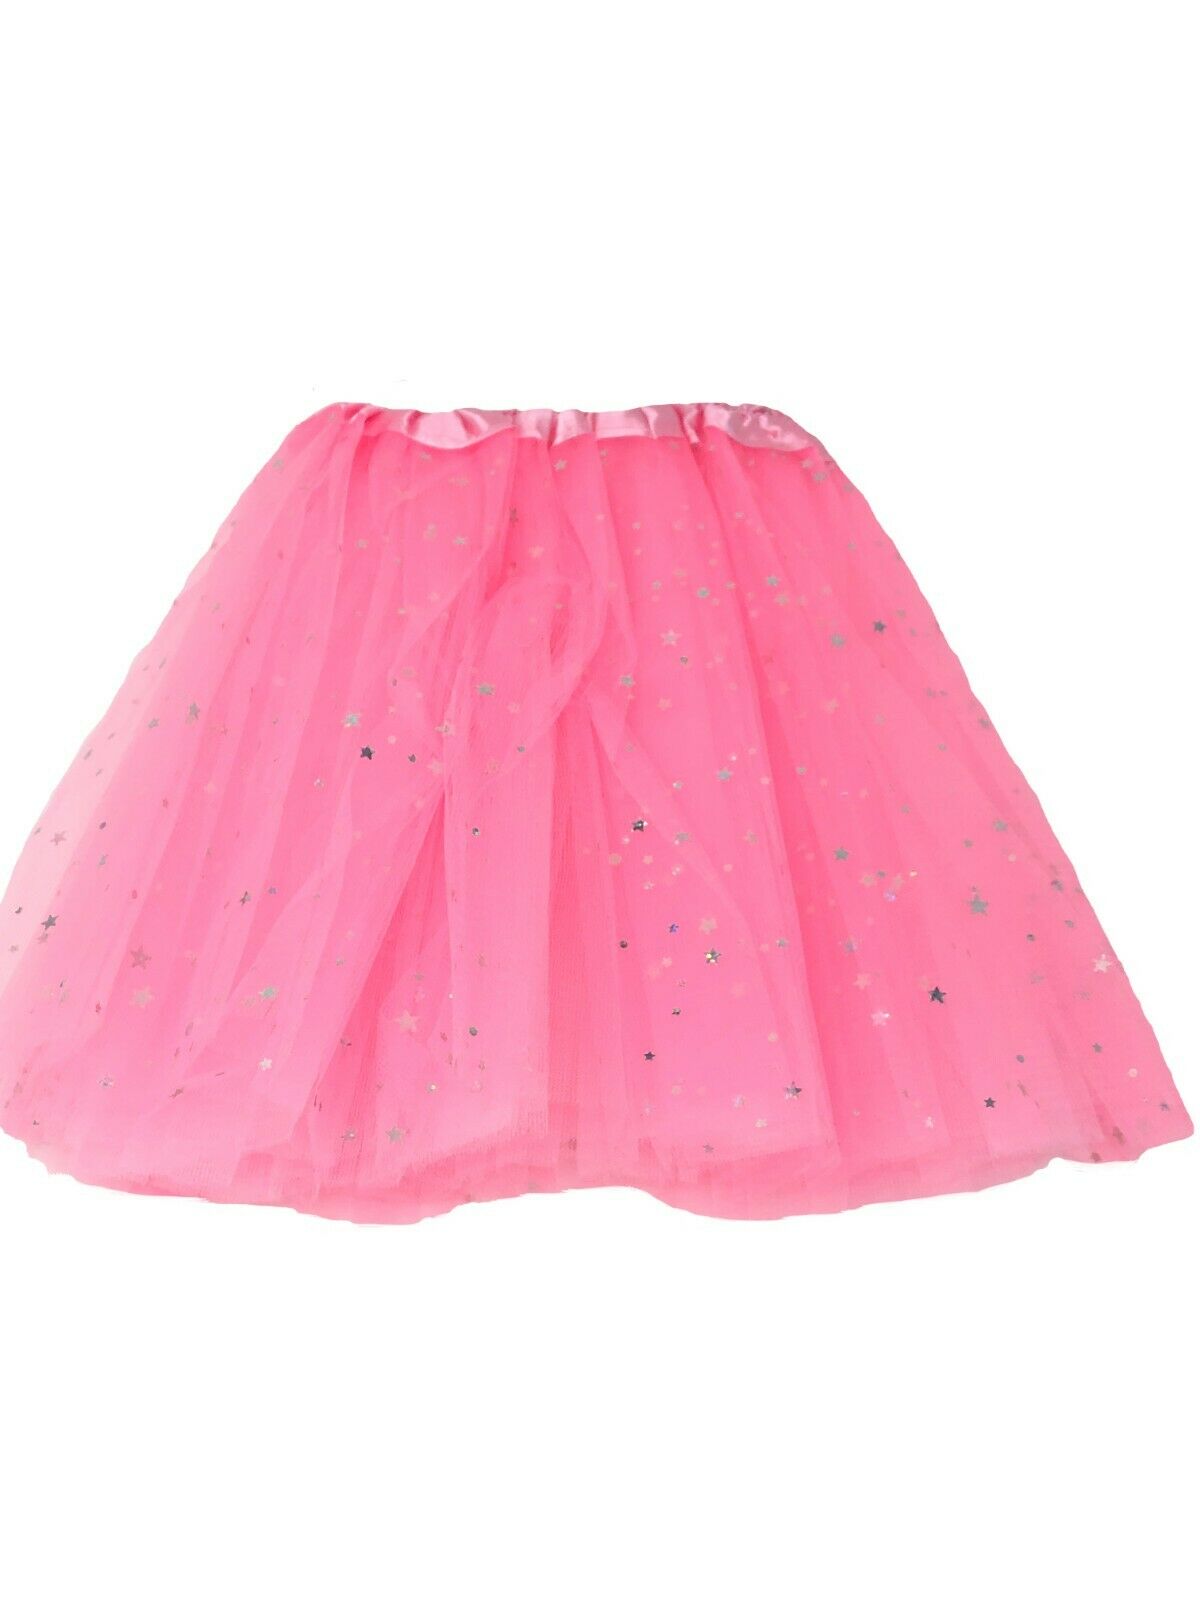 Girls Tutu Net Skirt Silver Sparkly Stars Fancy Dress Ballet Dress Up ...